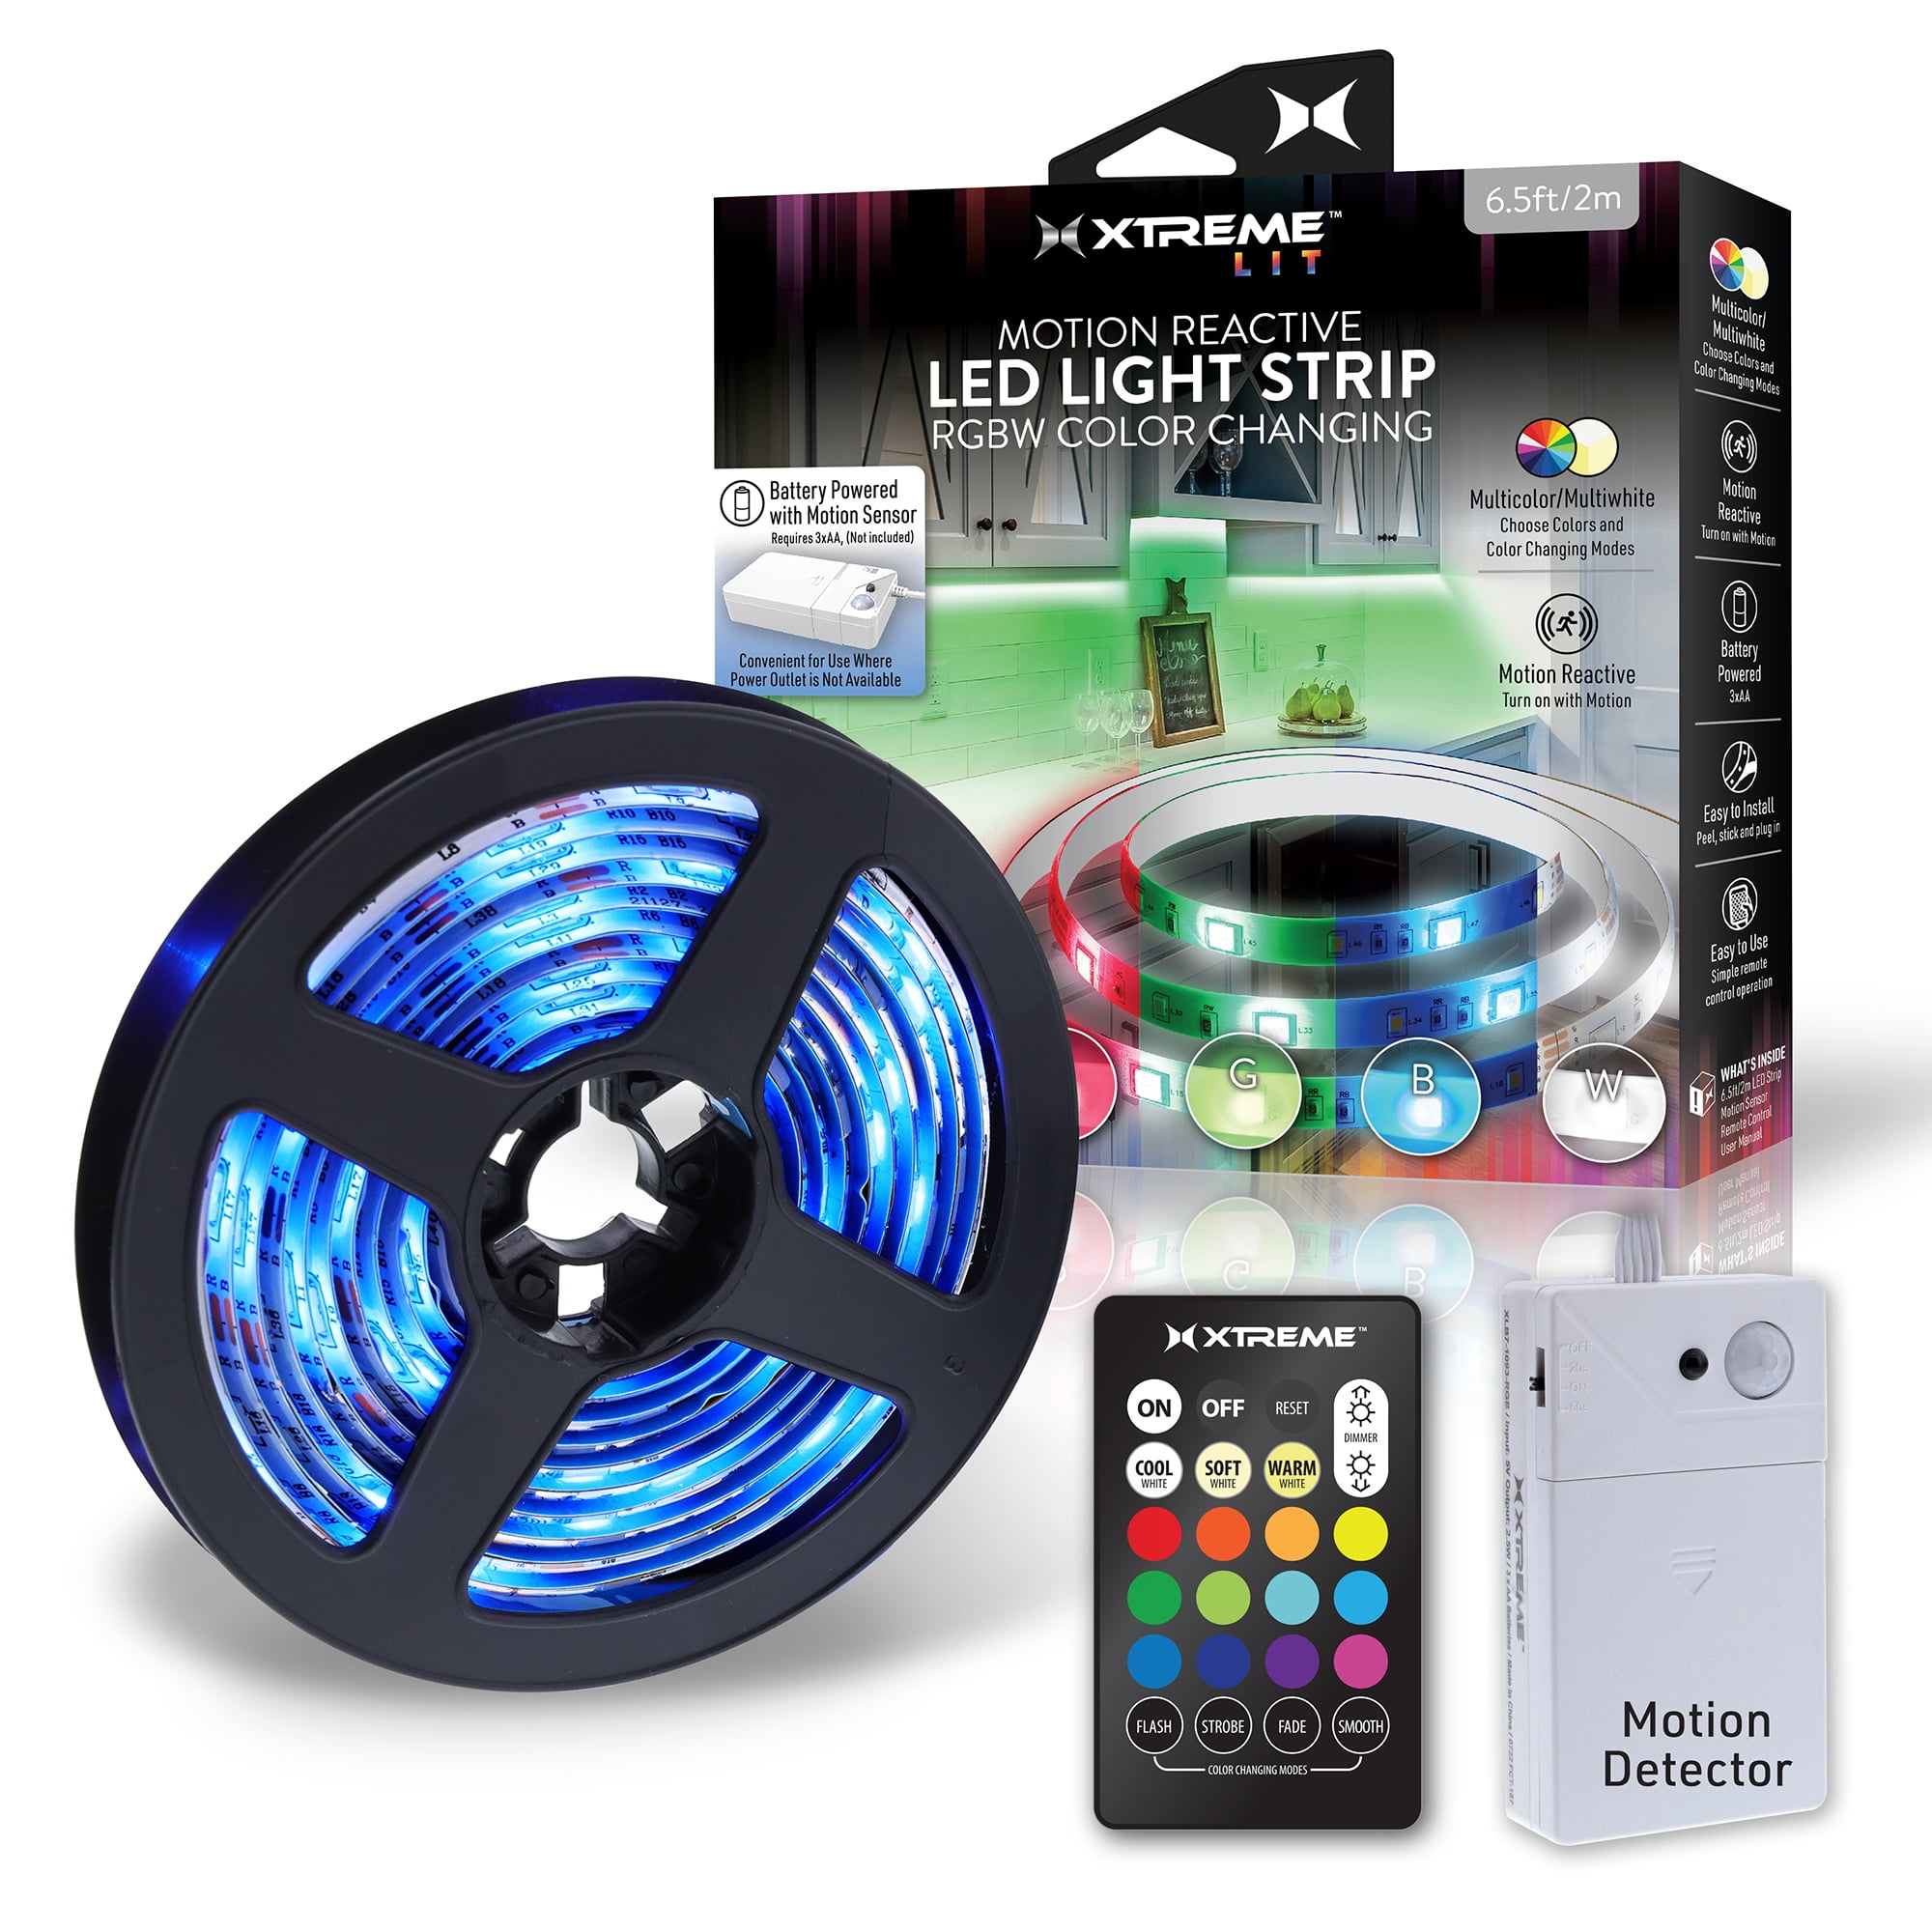 Overweldigen Alternatief voorstel Lezen Xtreme Lit 6.5ft Indoor Motion Activated RGBW Color-Changing LED Light Strip,  Battery Powered - Walmart.com